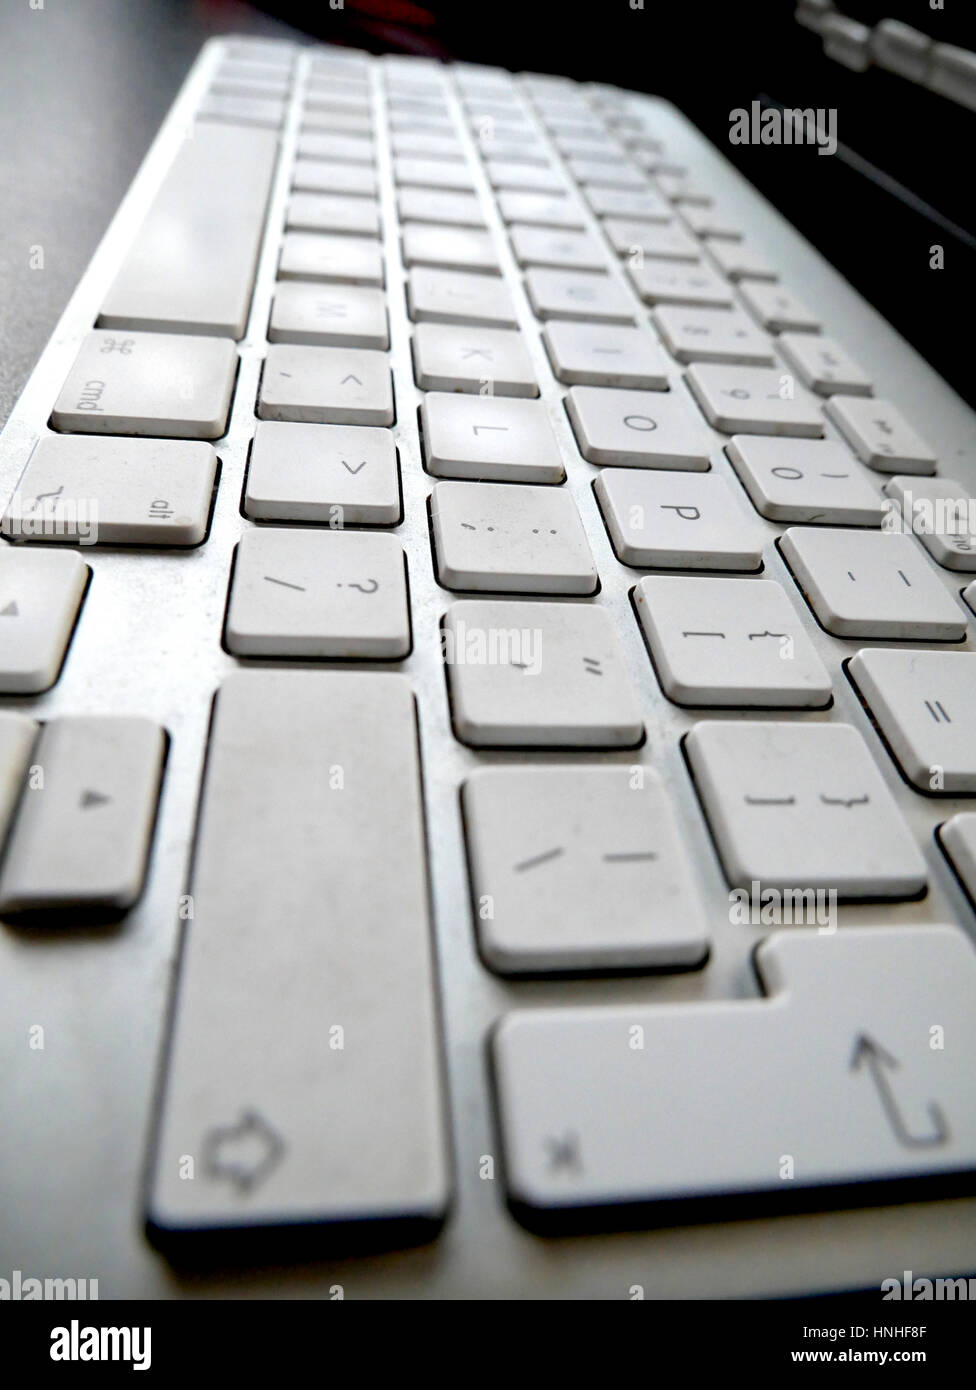 Eine Tastatur von einem Apple Mac Computer Stockfoto